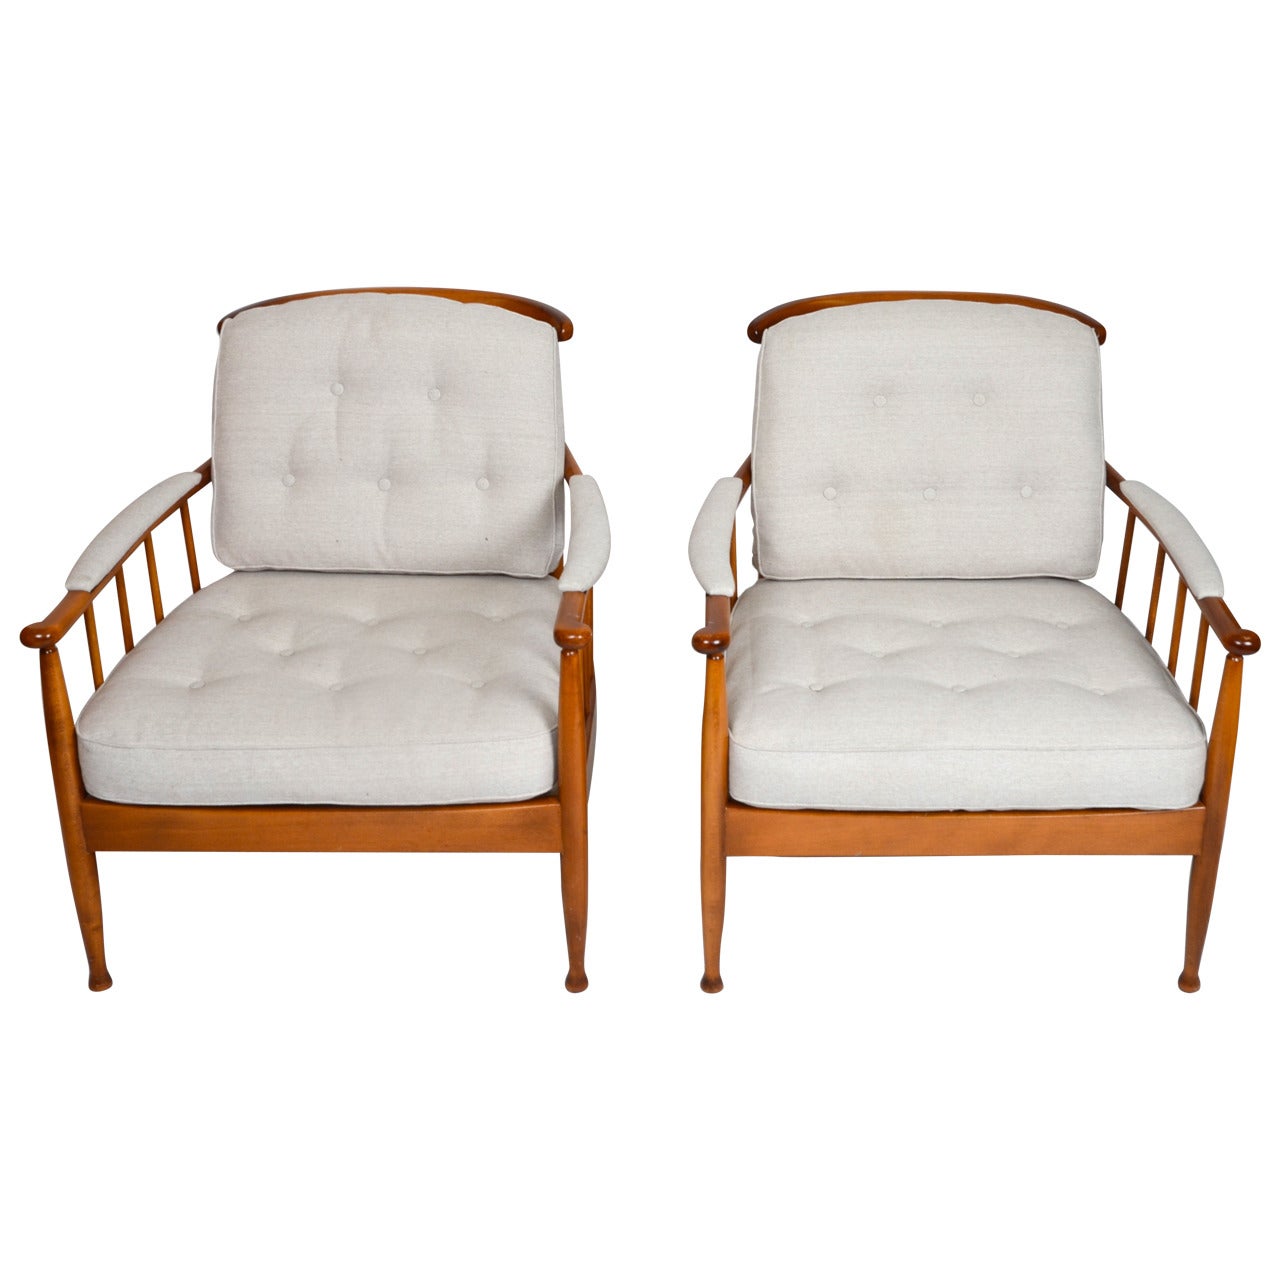 Pair of Skrindan Lounge Chairs by Kerstin Hörlin-Holmquist for OPE Möbler